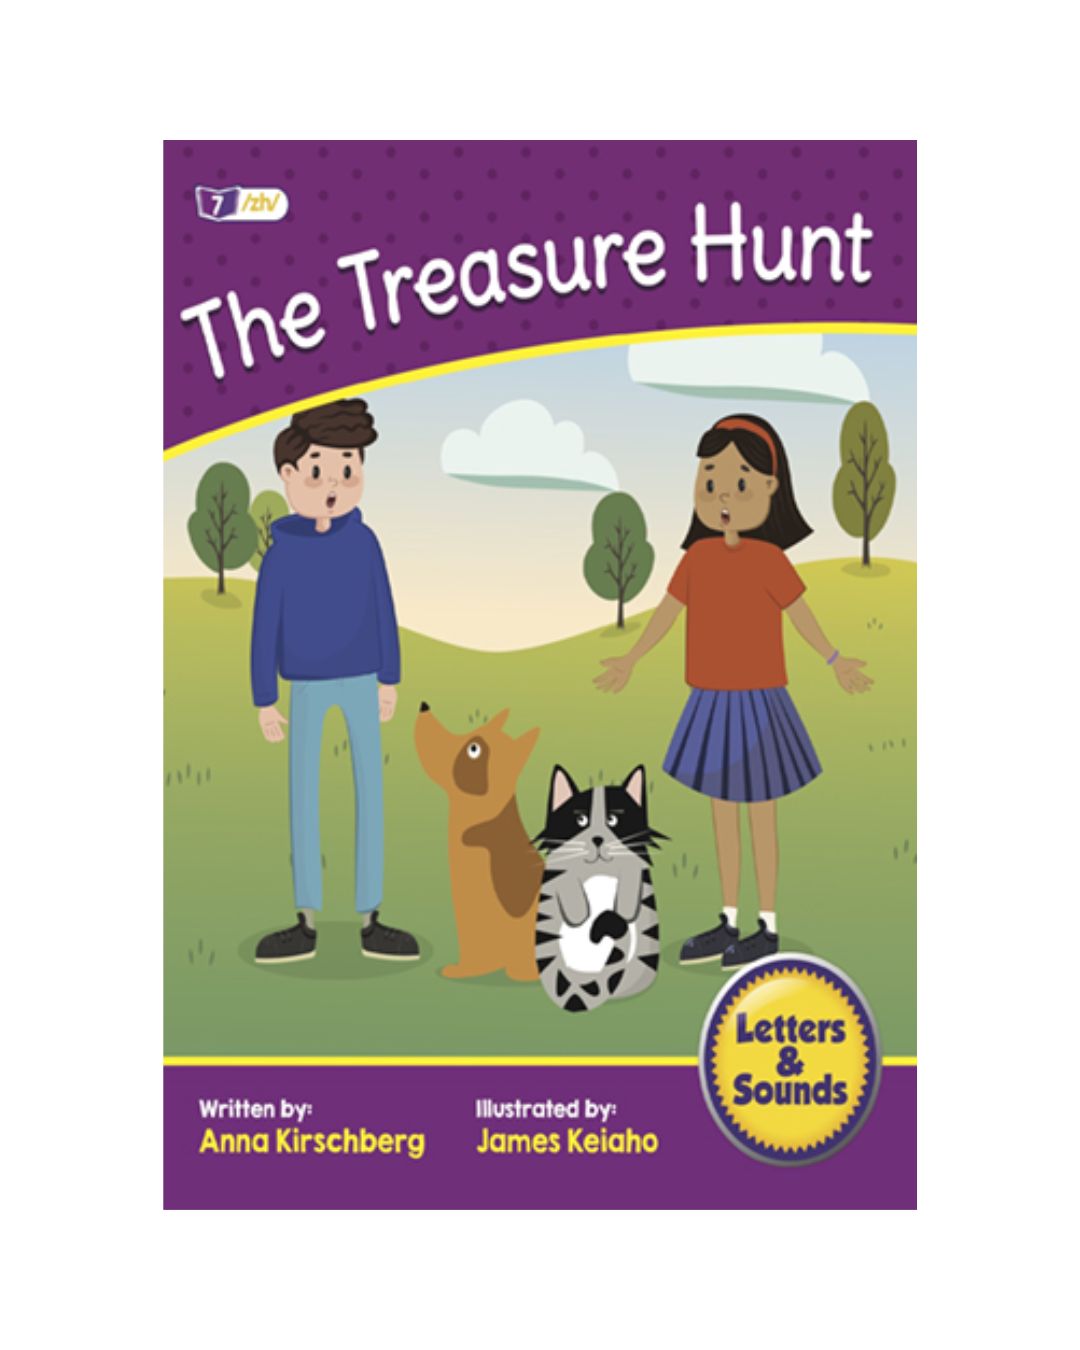 buy treasure hunt online - OnlineBooksOutlet